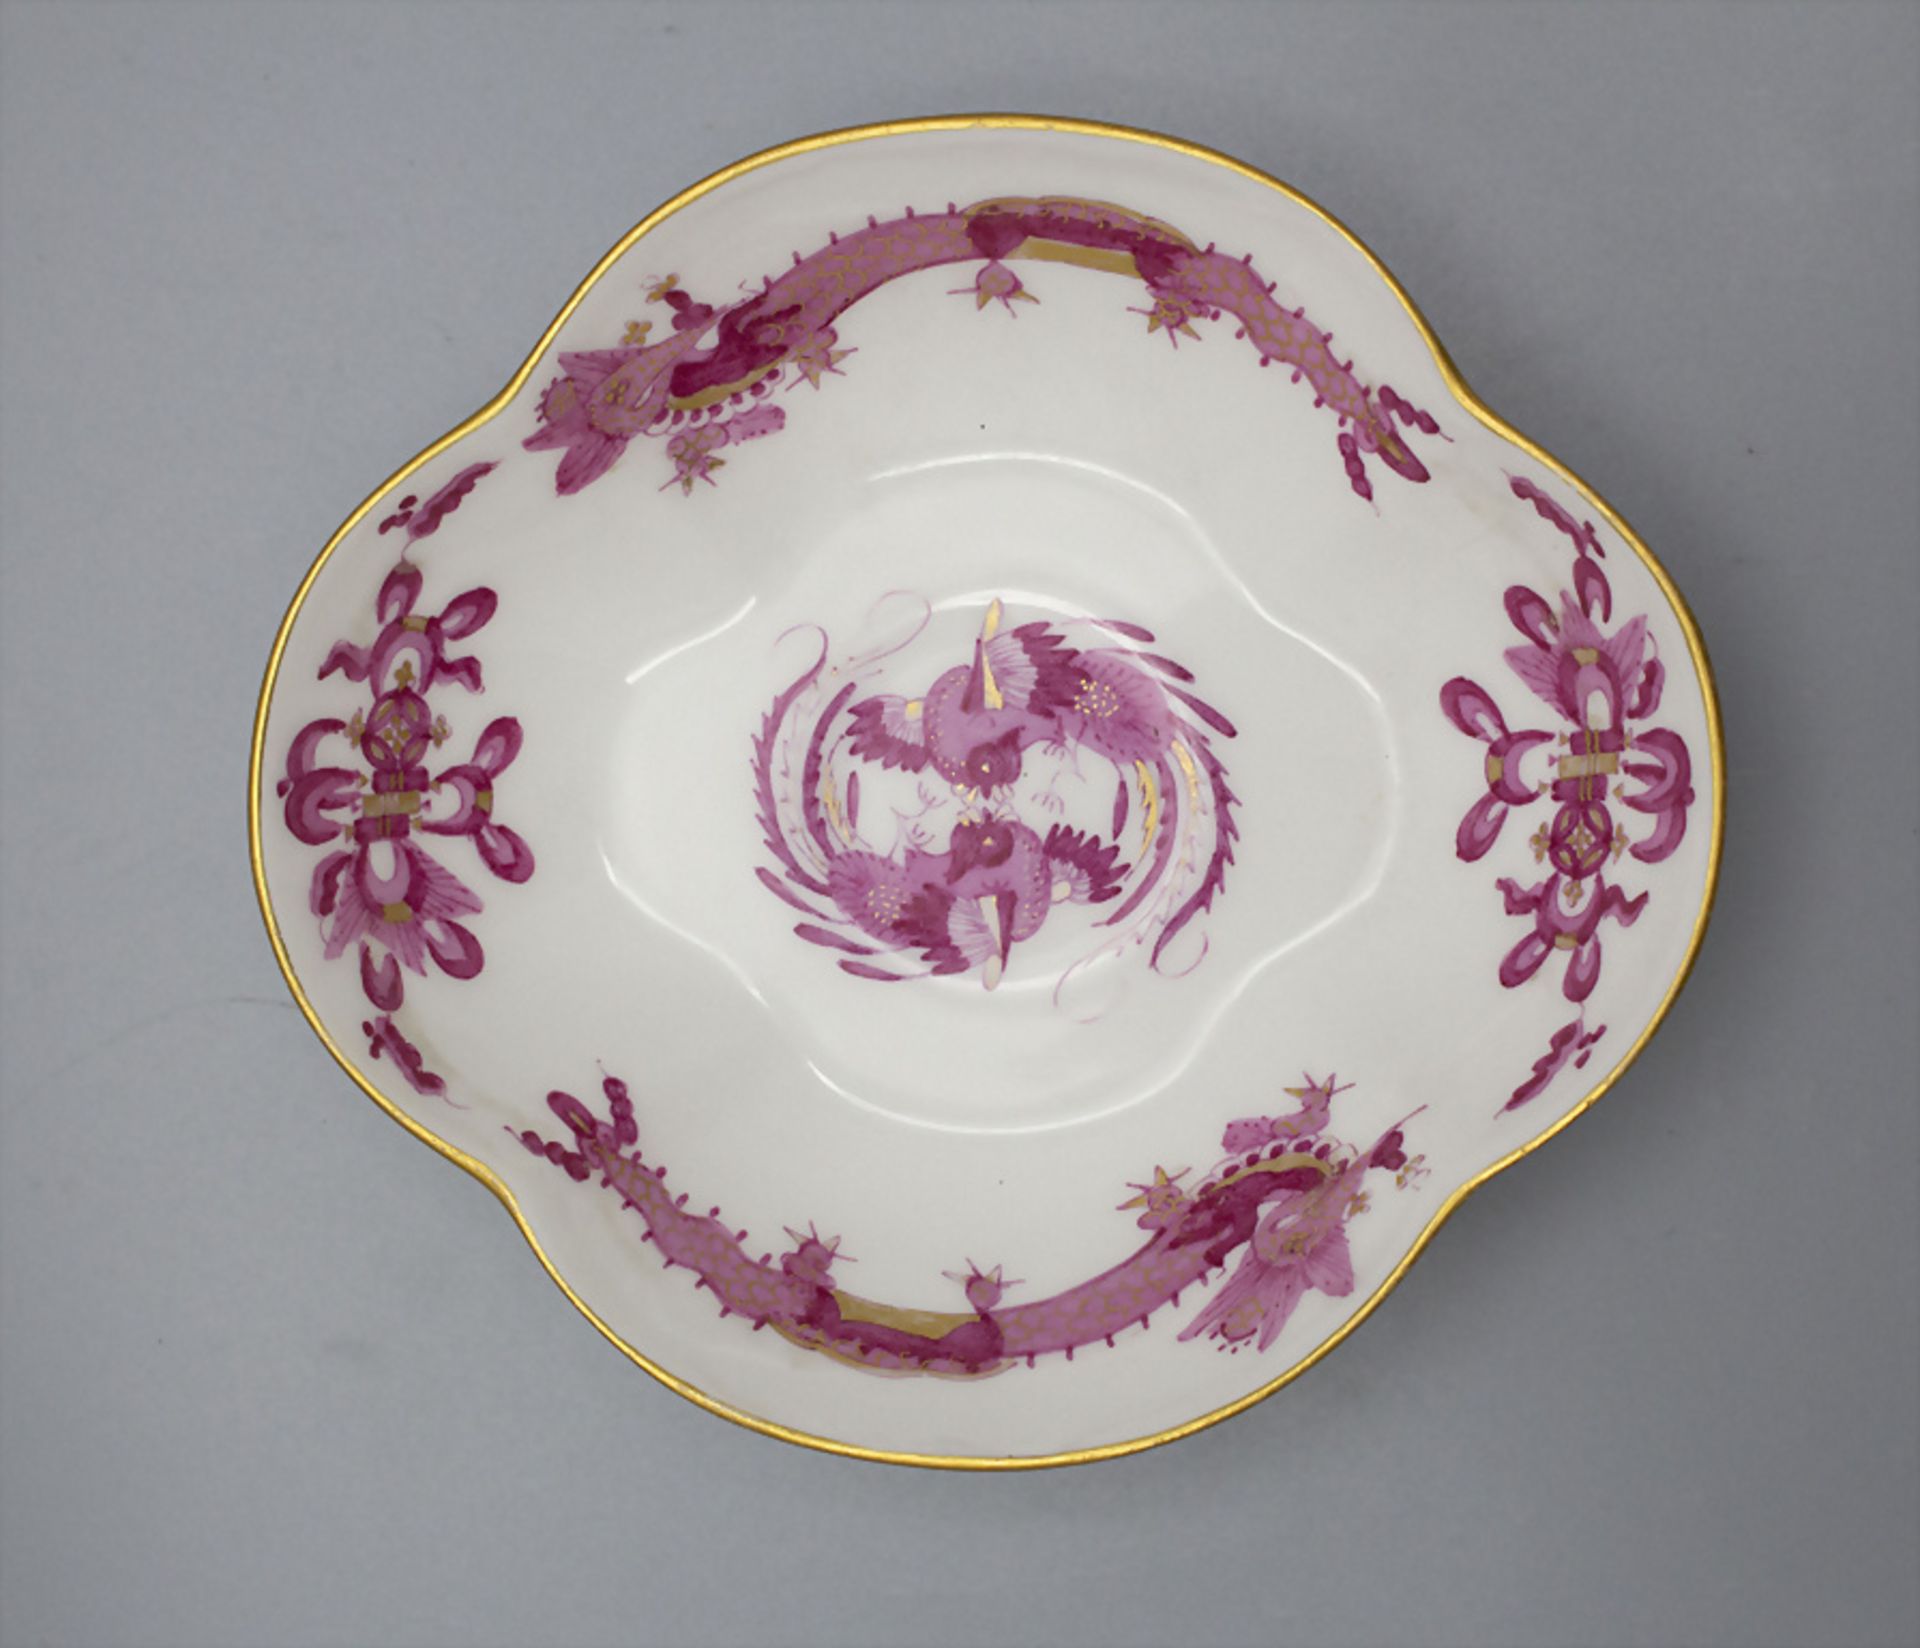 Zierschälchen 'Reicher Drache' / Unterschale / A decorative dish with 'Rich Dragon', Meissen, ... - Bild 2 aus 3